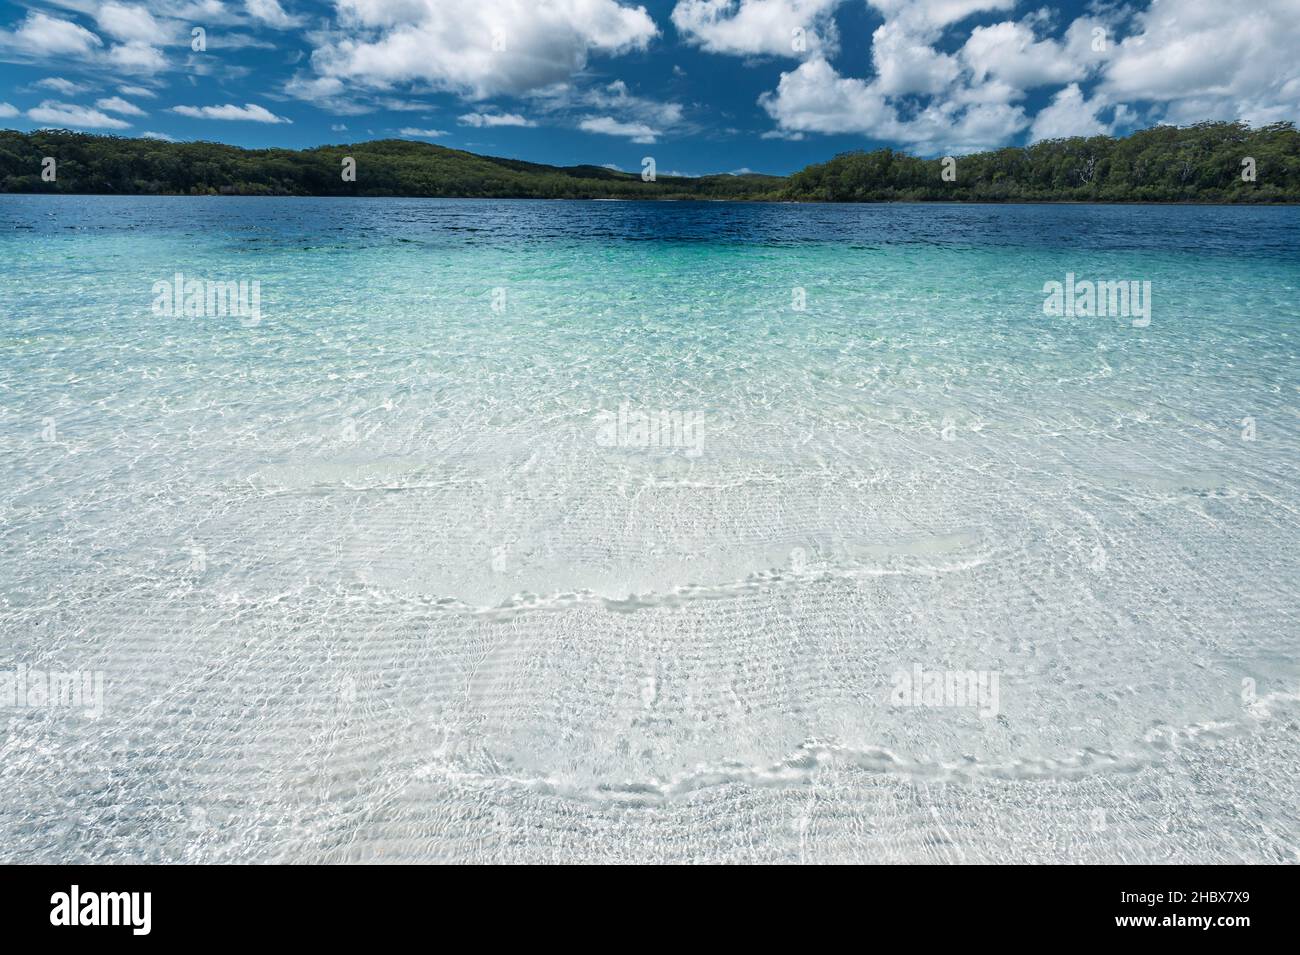 Eccezionale lago McKenzie su Fraser Island, l'isola di sabbia più grande del mondo. Foto Stock